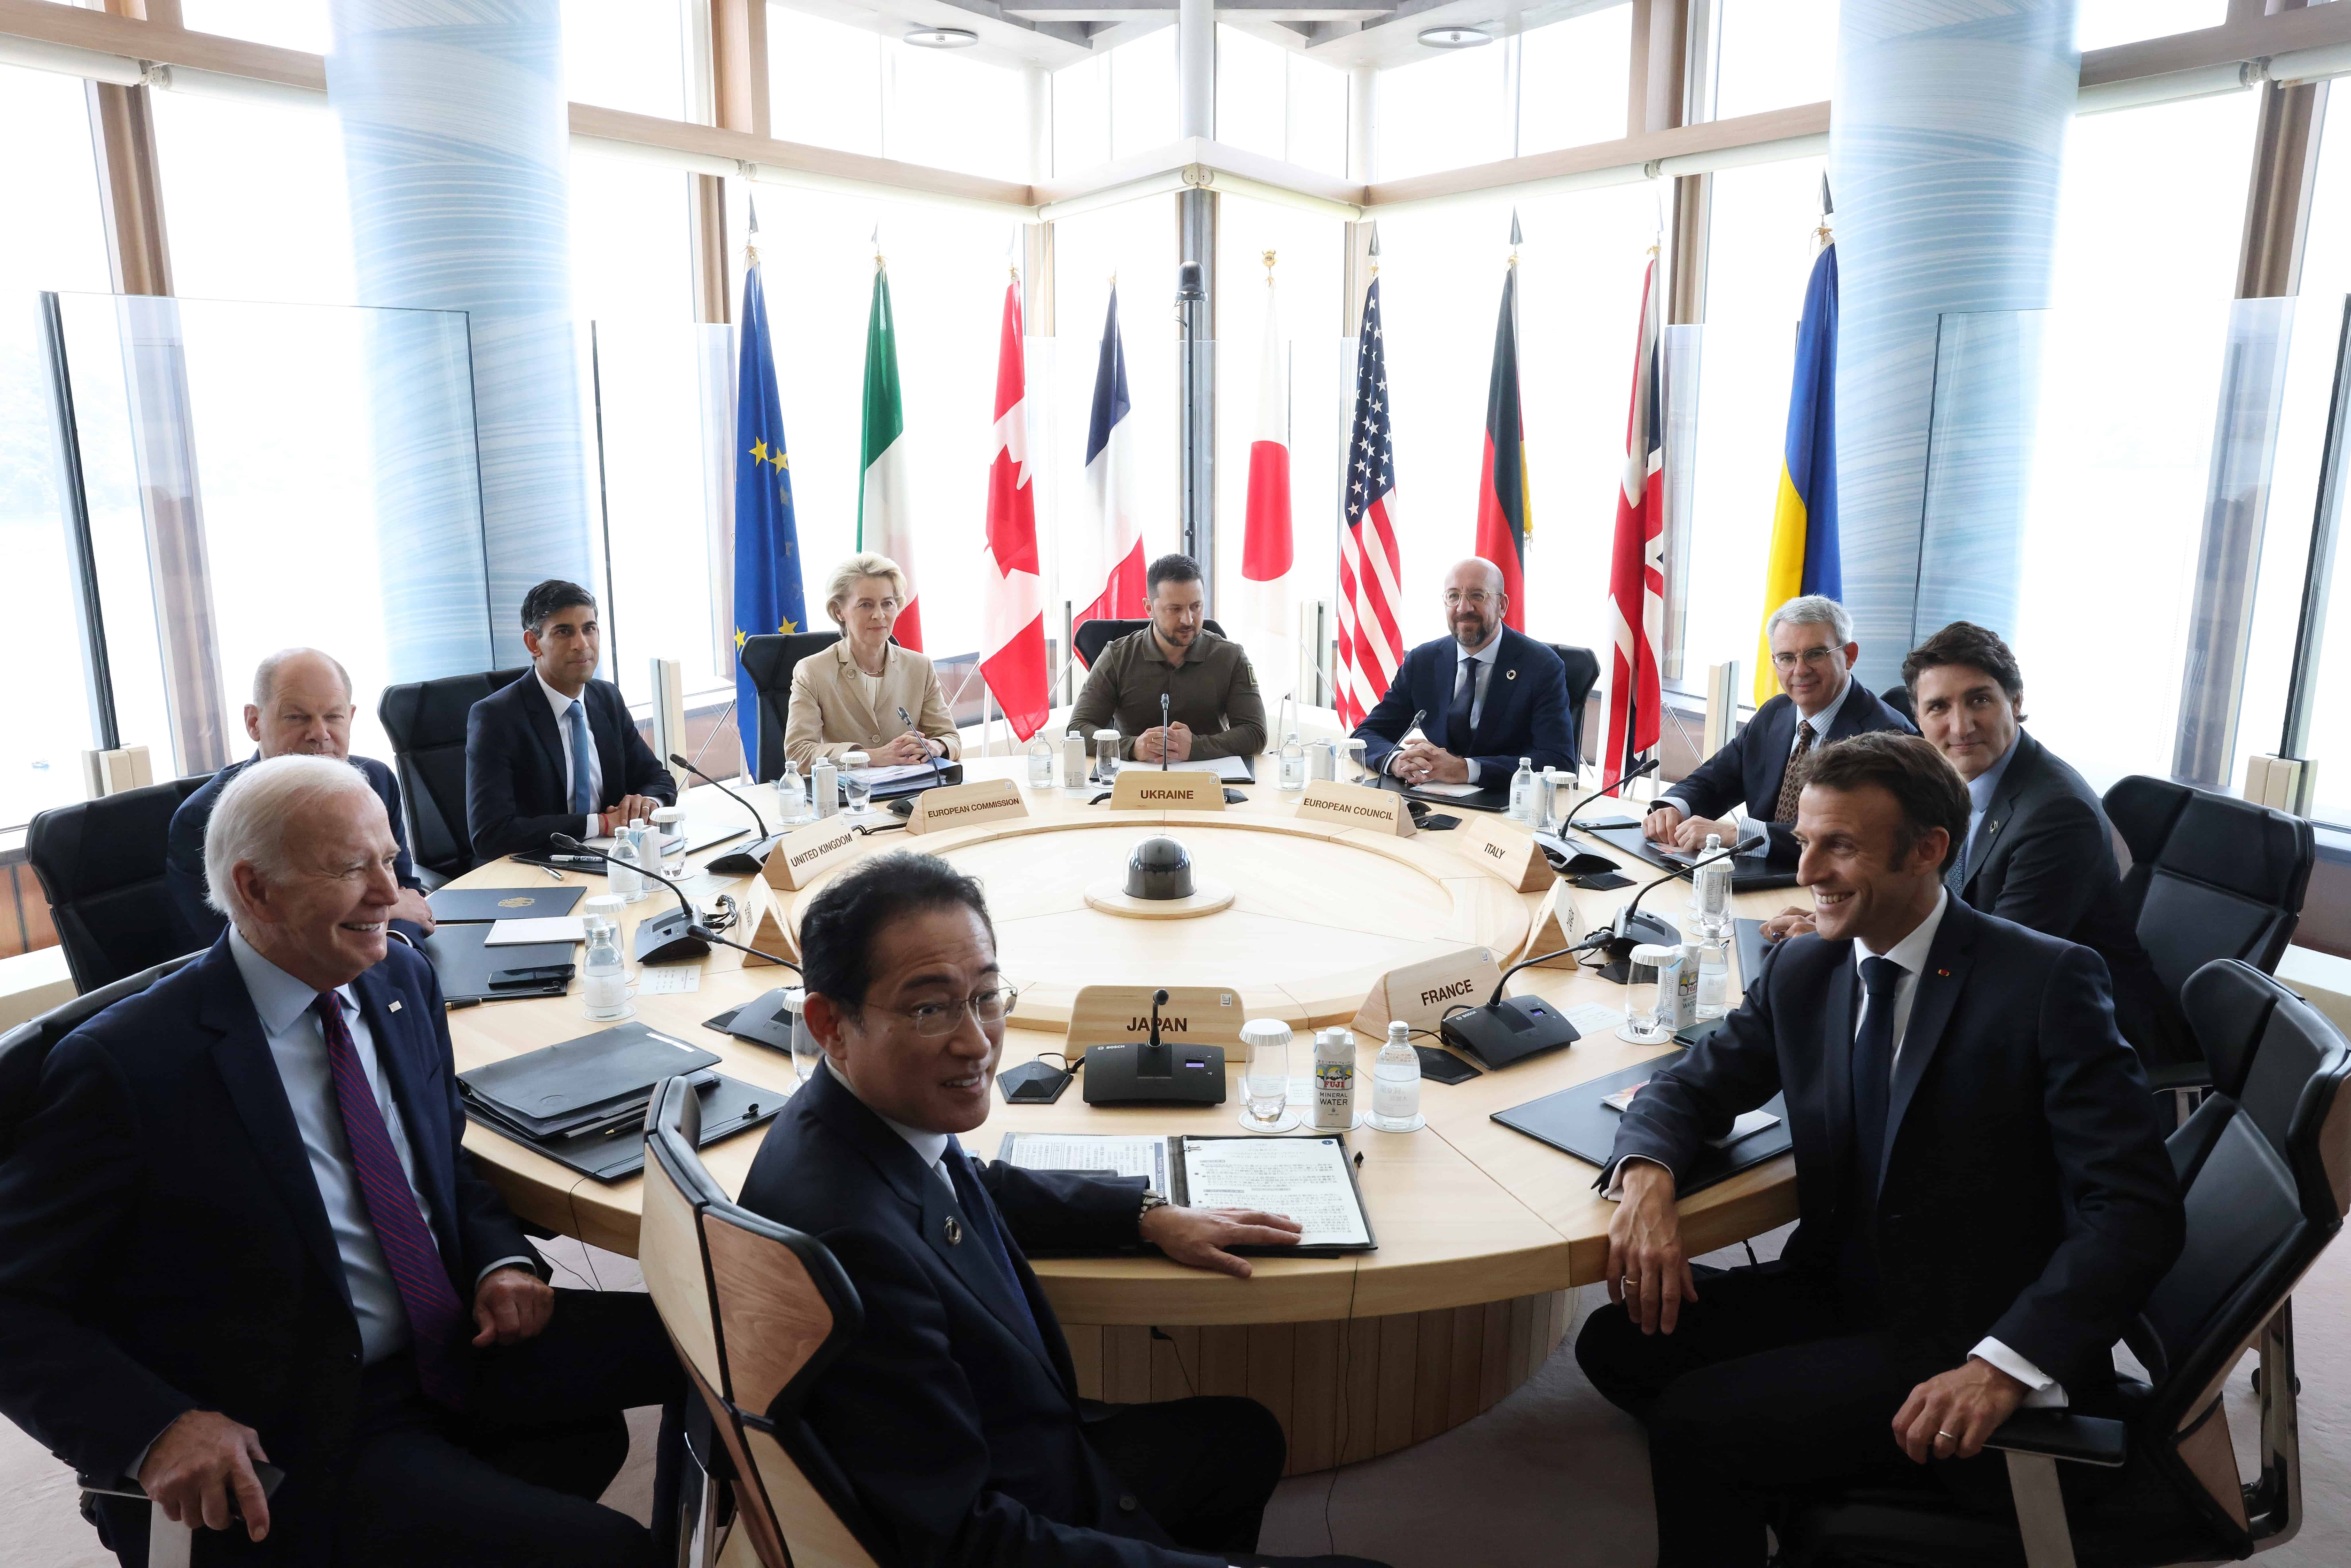 Přečtete si více ze článku Vrcholní představitelé na summitu G7 v Hirošimě jednali o podpoře Ukrajiny, zvýšení tlaku na Rusko a mocenských ambicích Číny